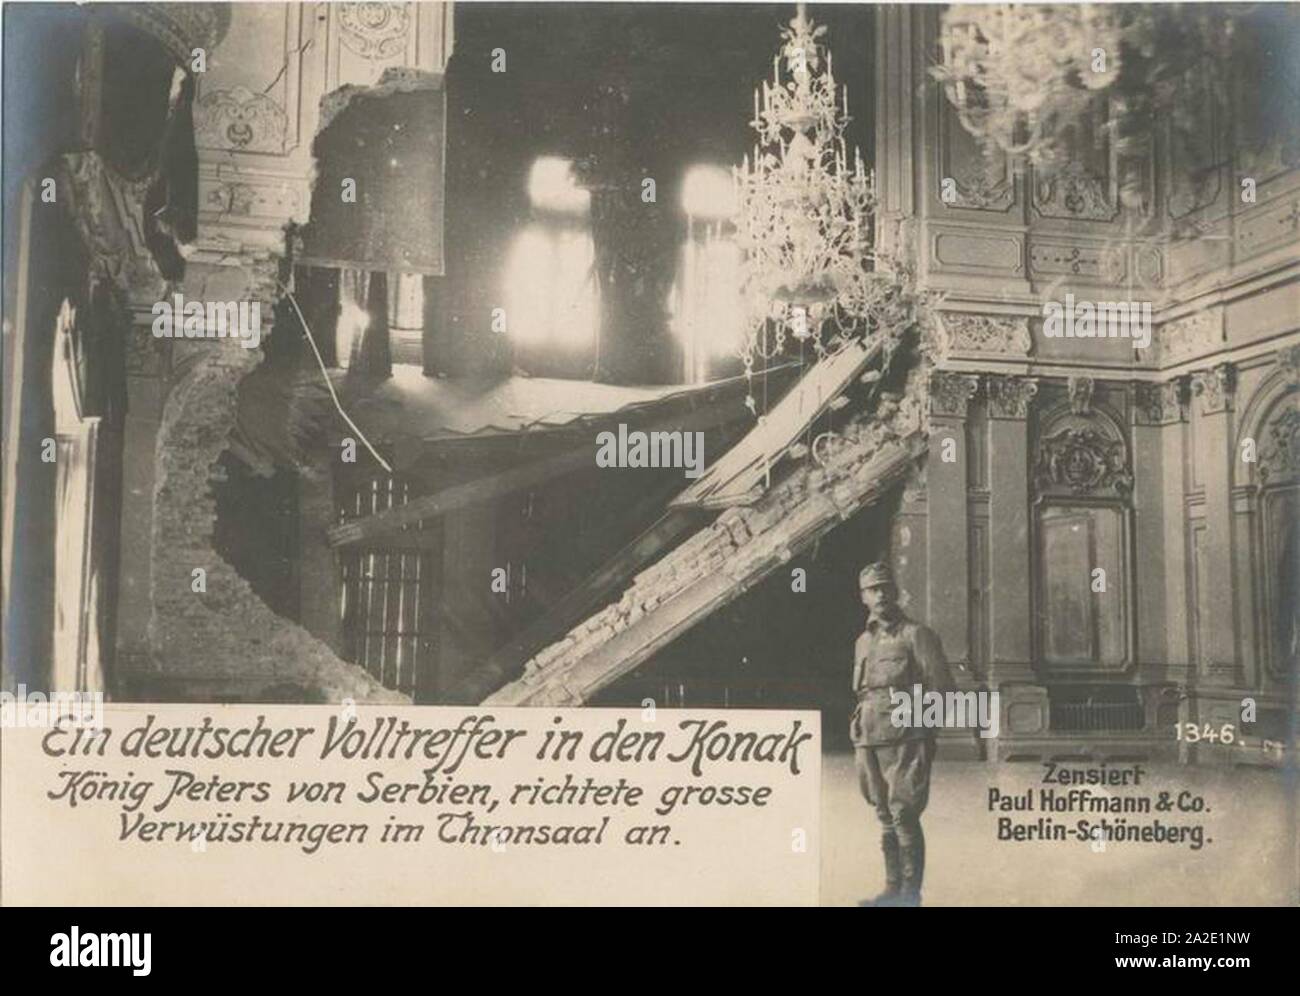 Ein deutscher Volltreffer in den Konak König Peters von Serbien. Foto Stock